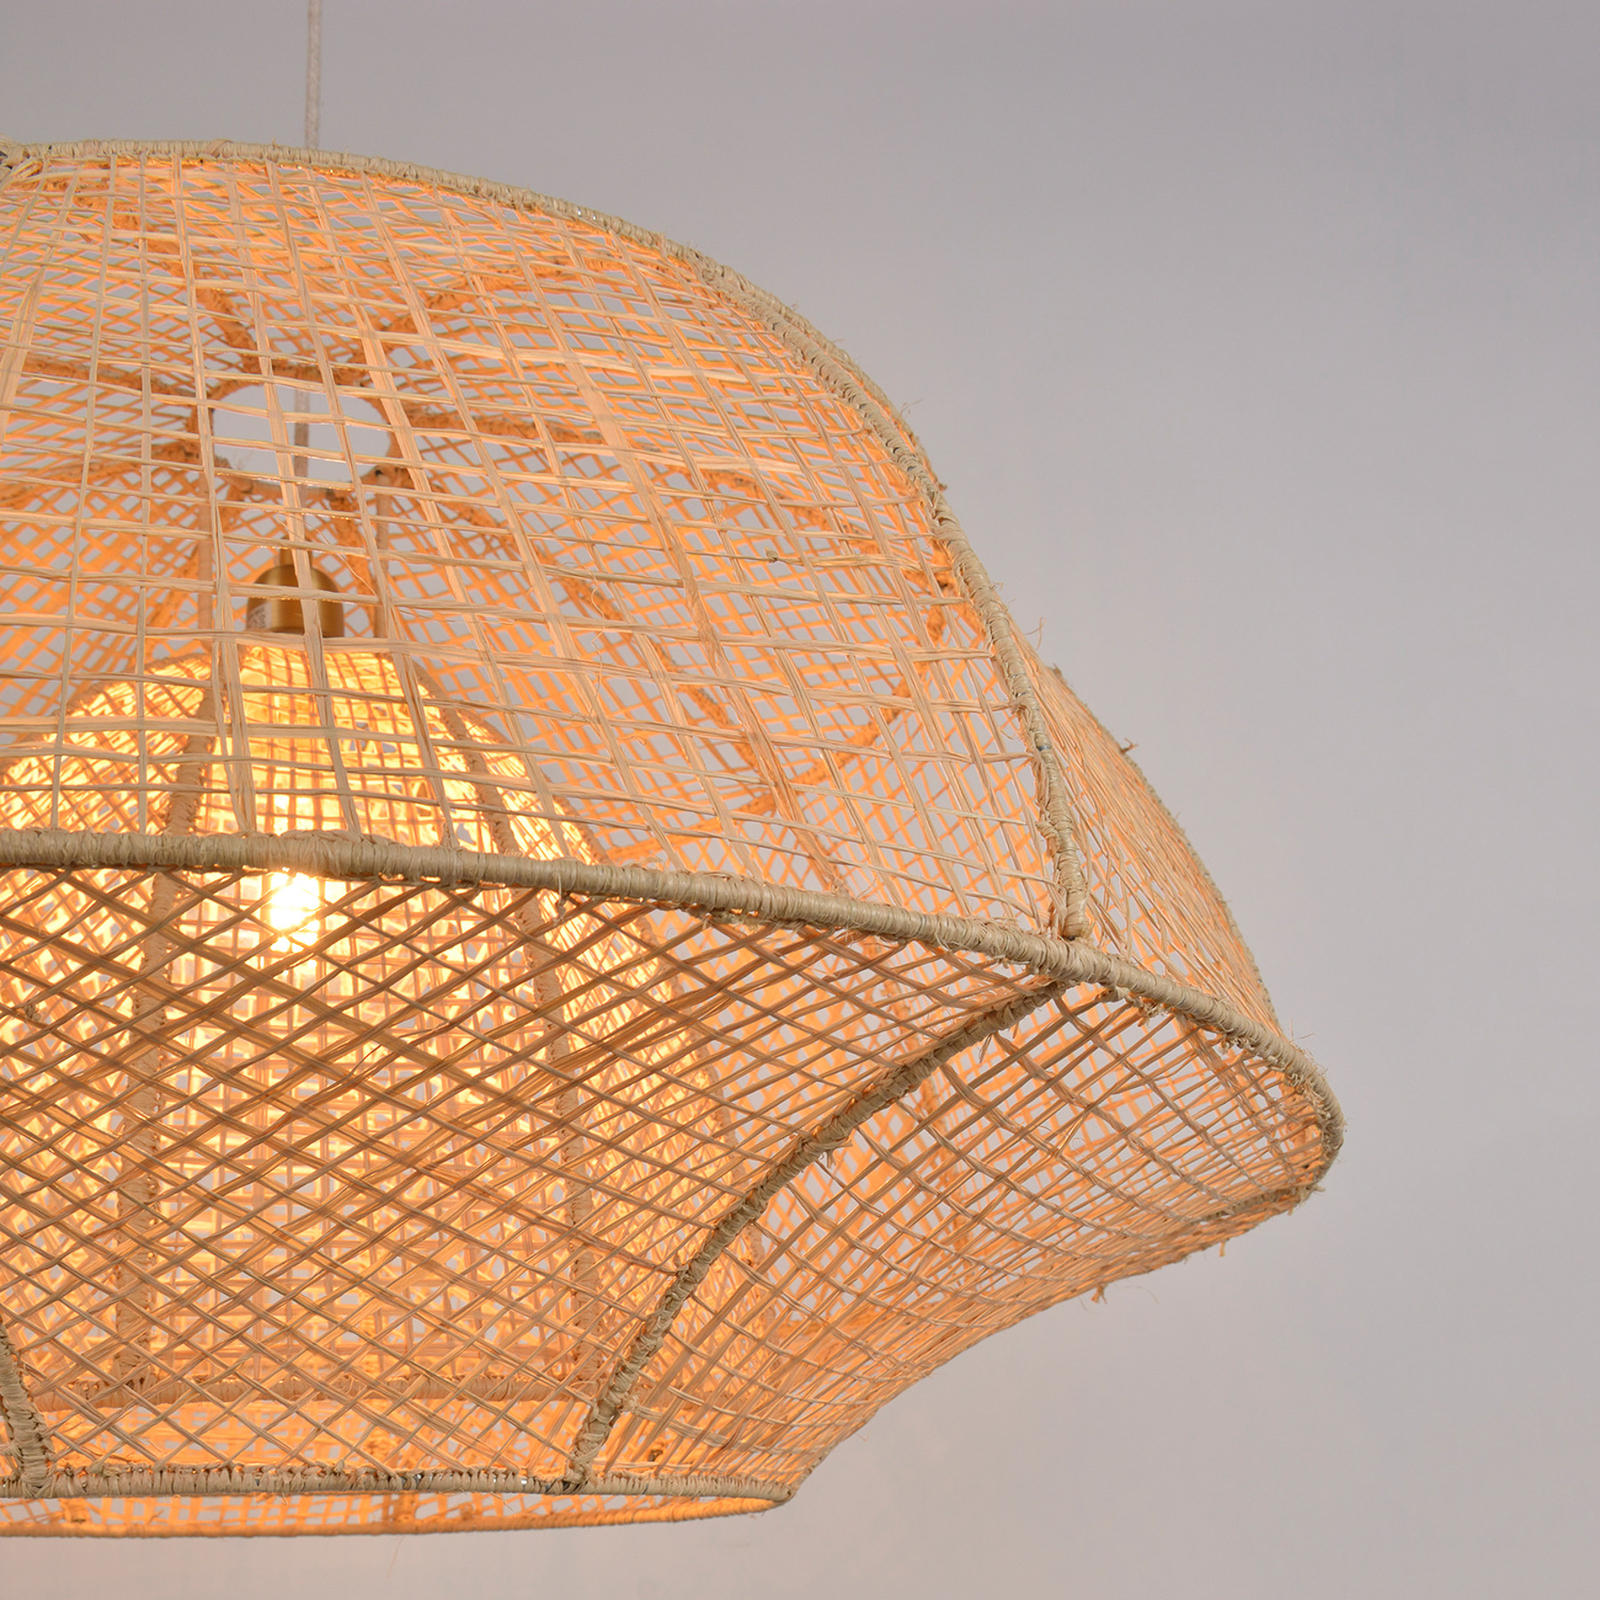 MARKET SET Závesná lampa Odyssée, palmové vlákno, Ø 78 cm